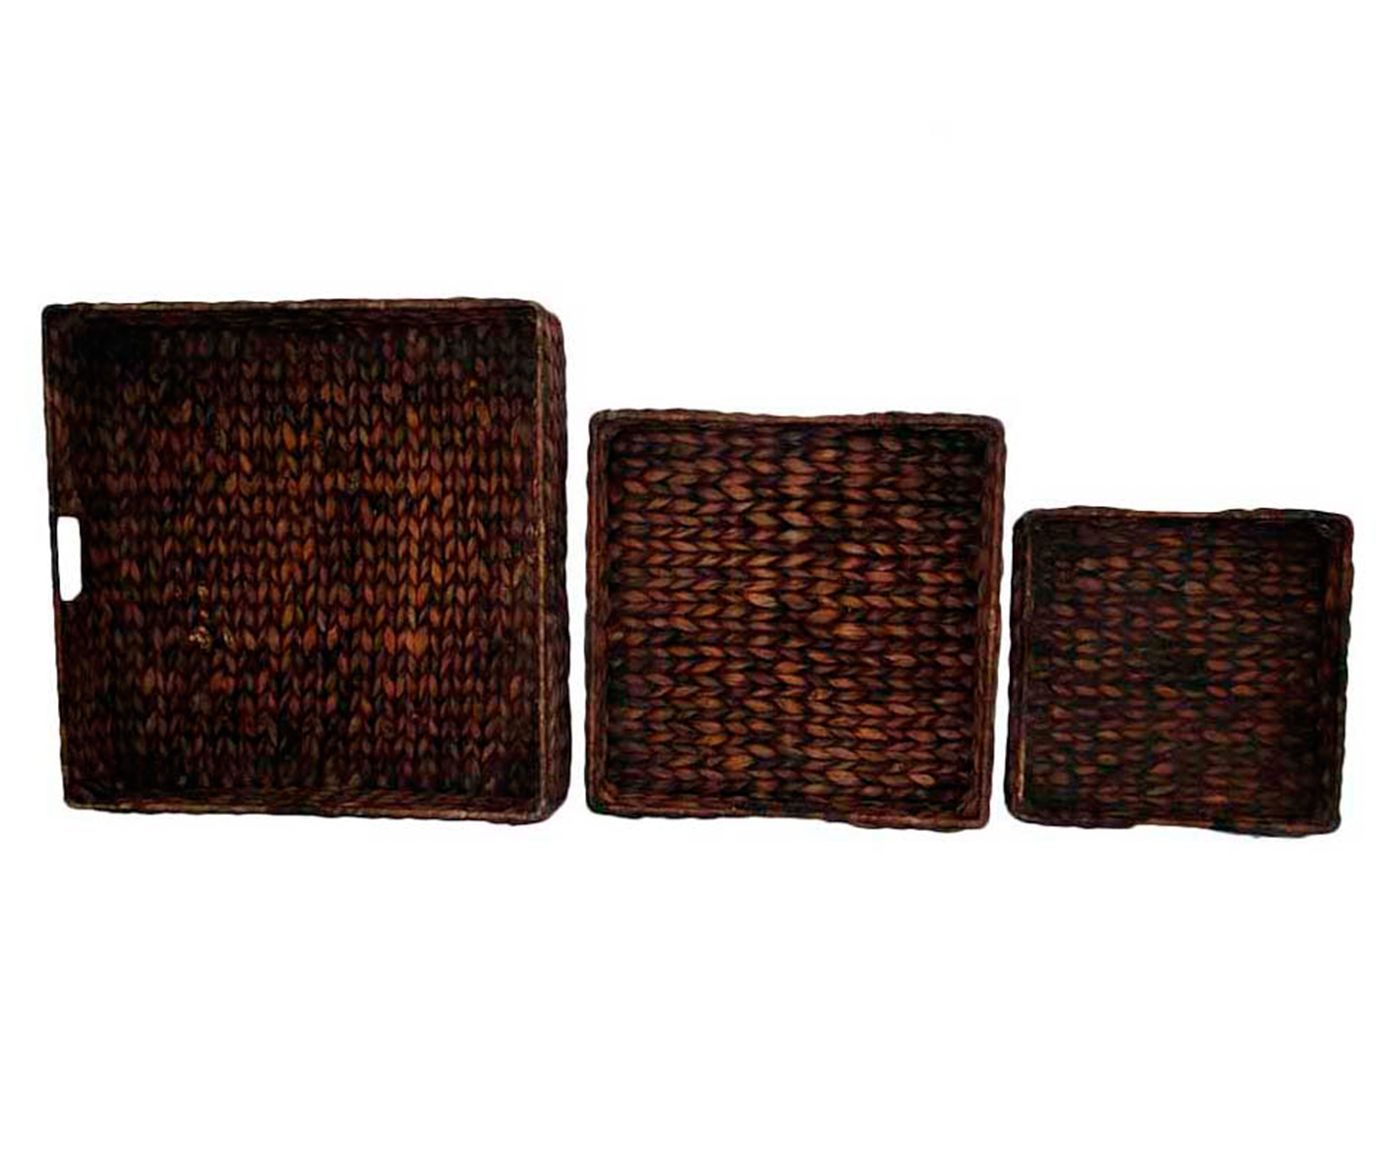 Conjunto de bandejas braided | Westwing.com.br